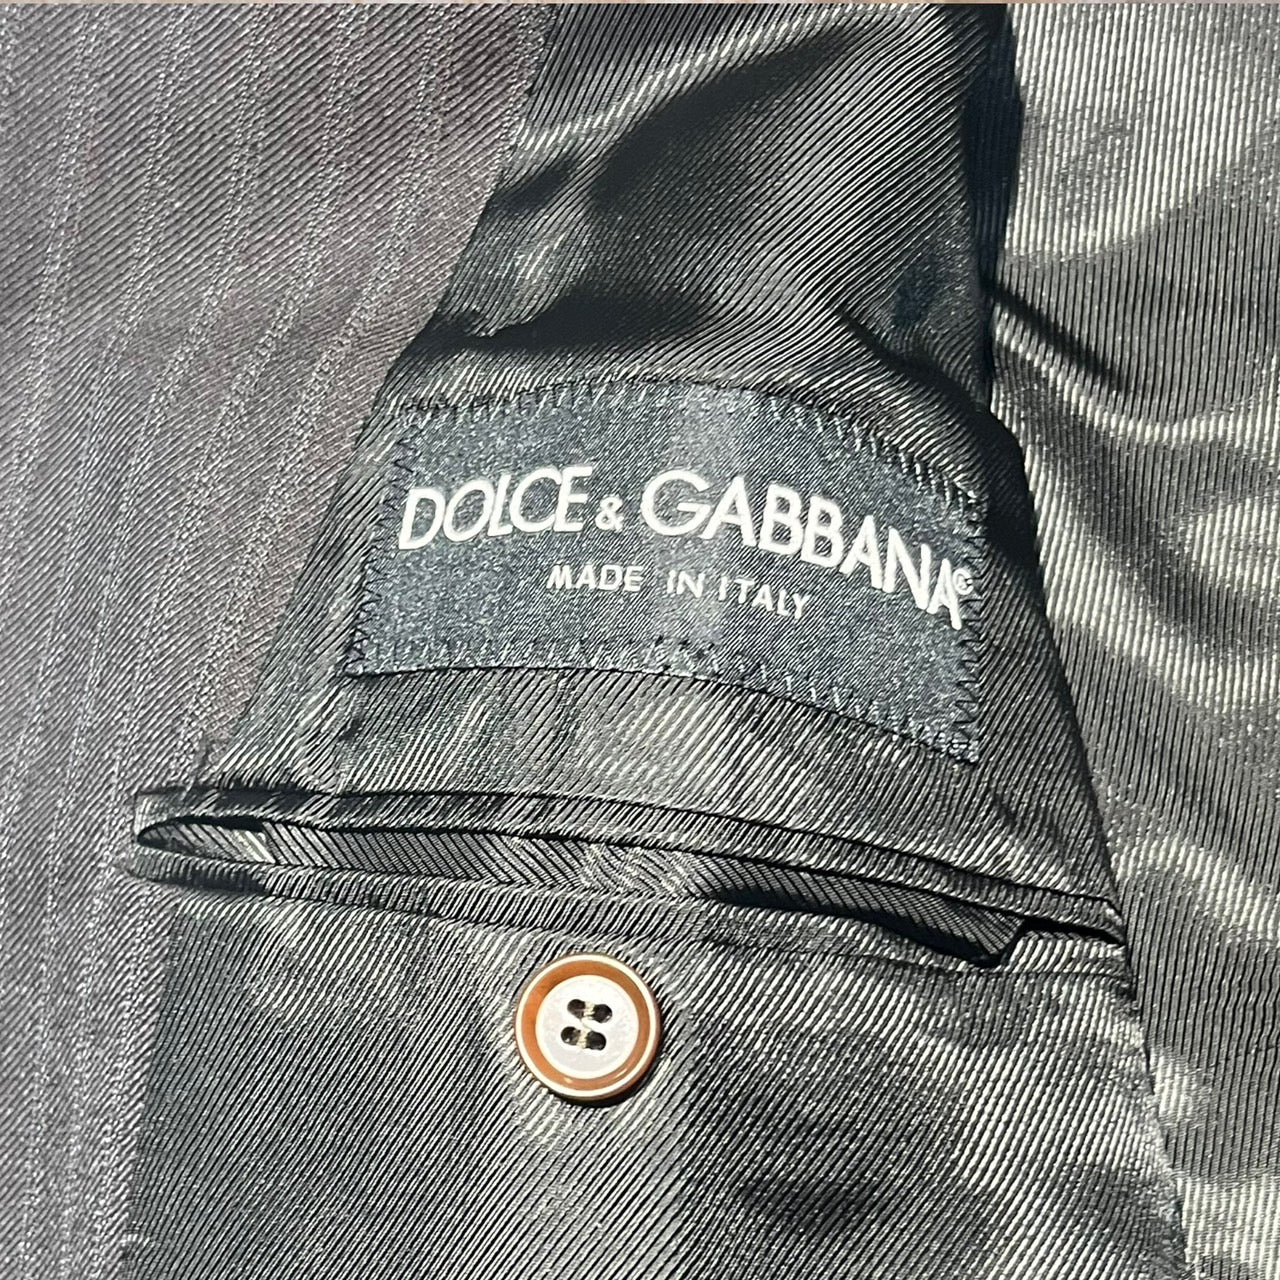 DOLCE&GABBANA(ドルチェ&ガッバーナドルガバ) 90'sダブルストライプセットアップジャケット 48(Lサイズ程度) ブラウン